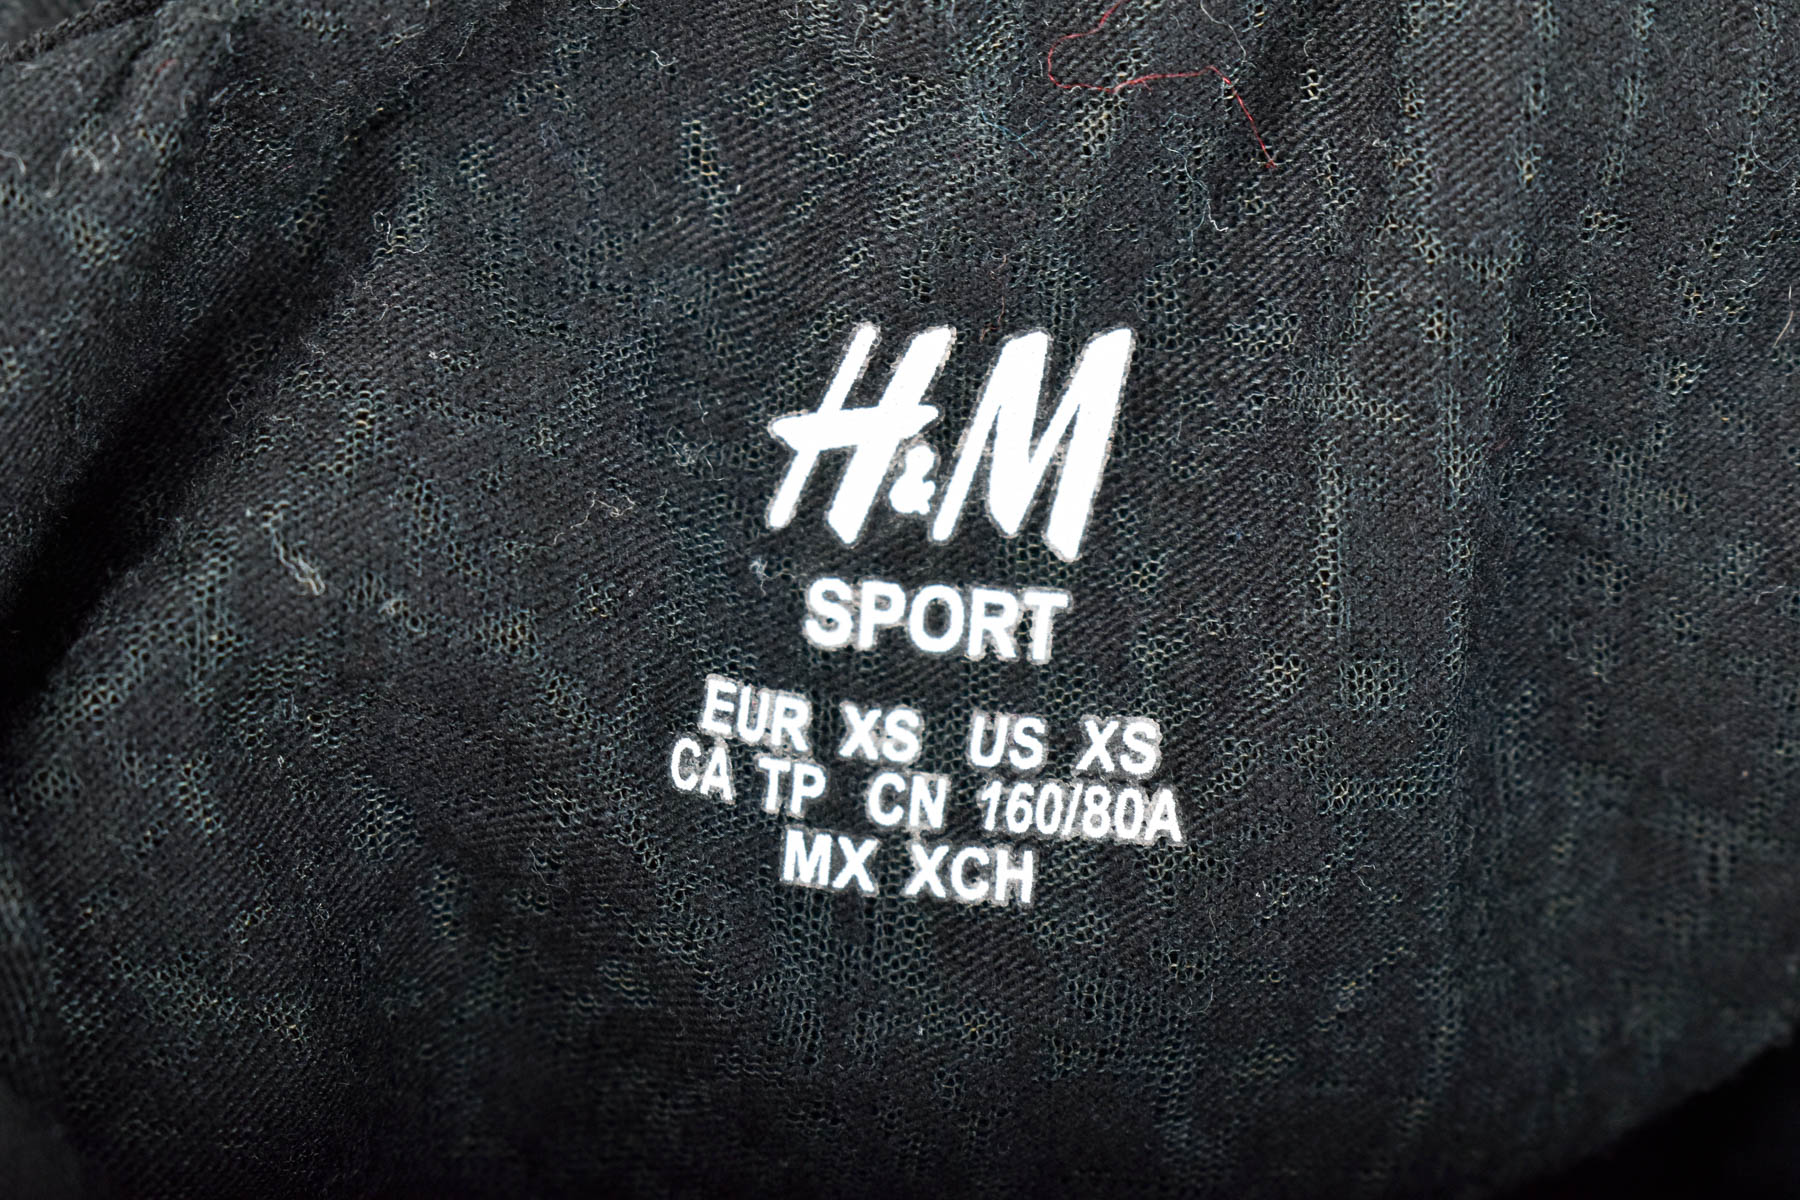 Women's t-shirt - H&M Sport - 2